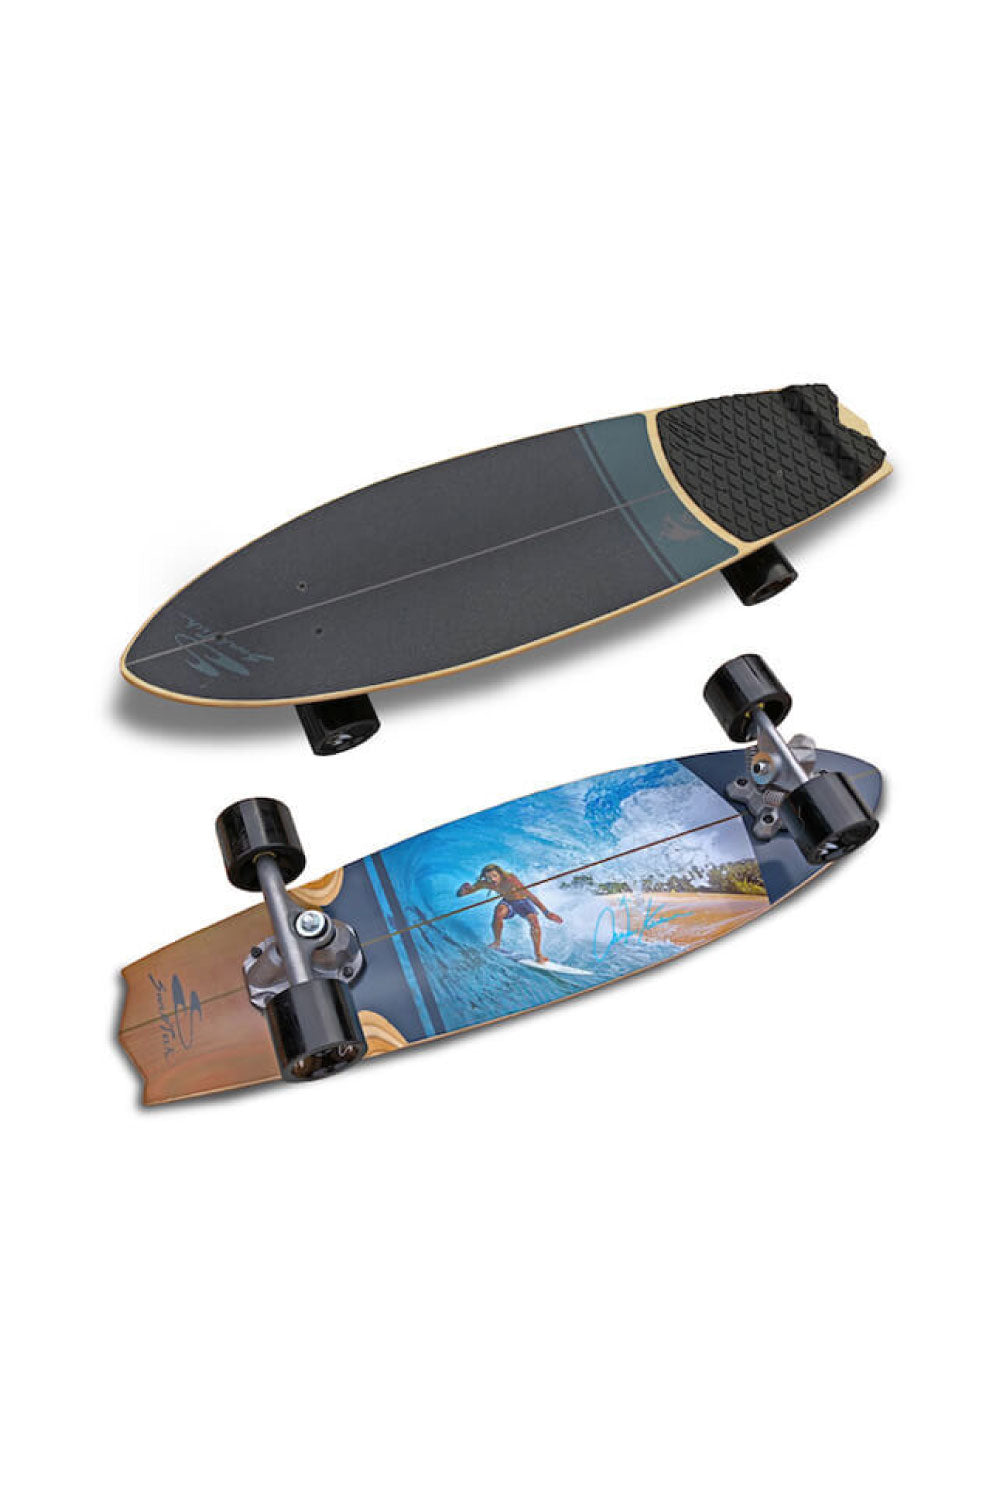 Swelltech Surf Skate Austin Keen Tube Complete Skateboard